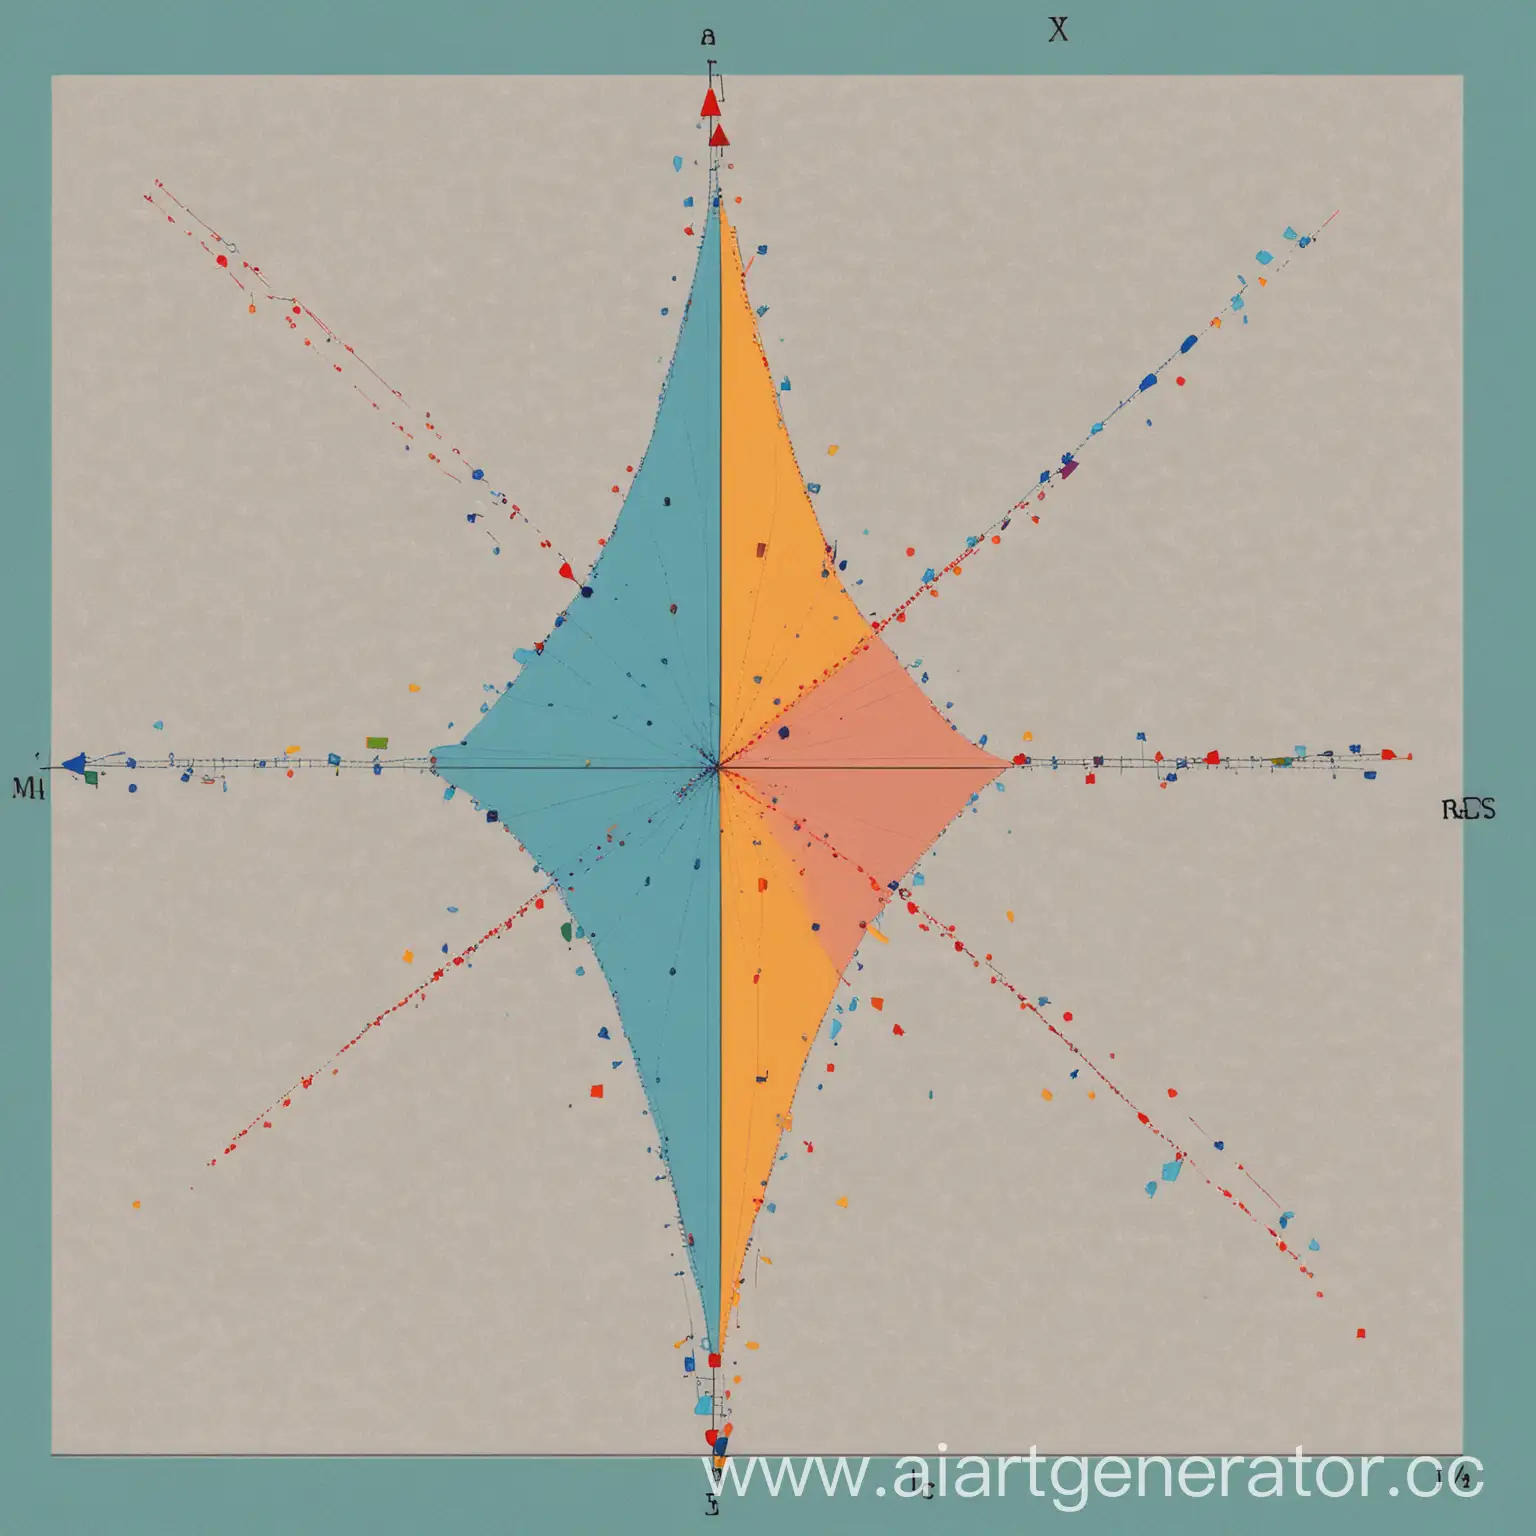 двумерная система координат с большими цветными точками на графике